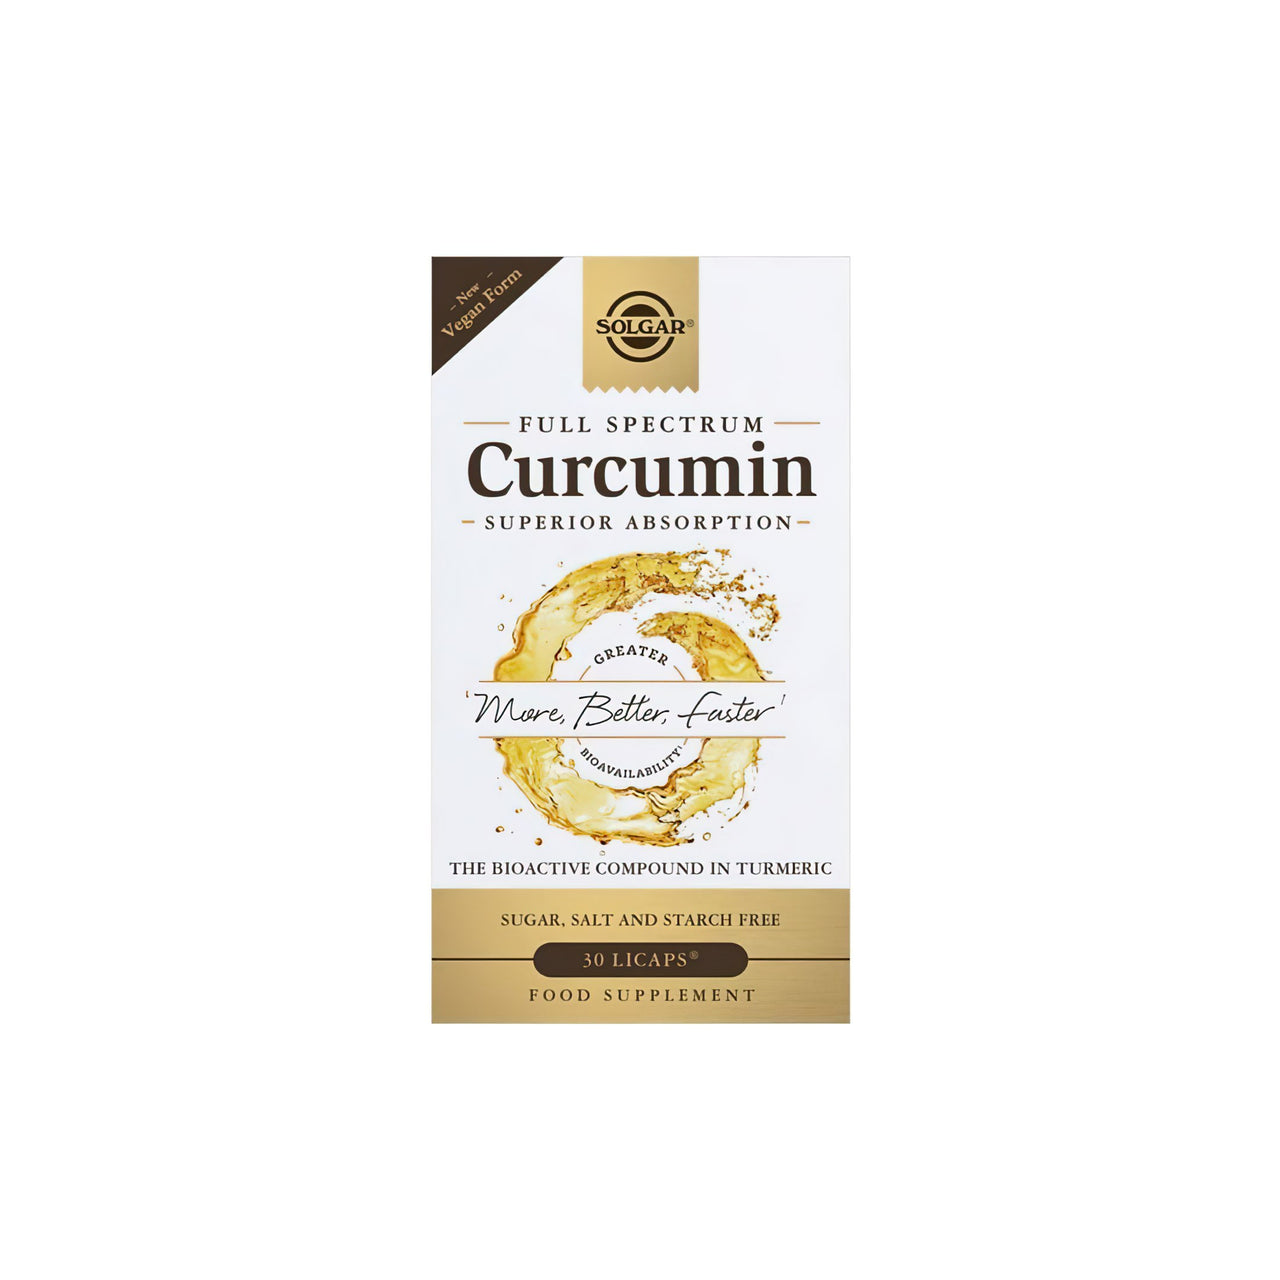 Eine Schachtel Full Spectrum Curcumin 30 Liquid Extract Softgel mit einem goldenen Etikett von Solgar.